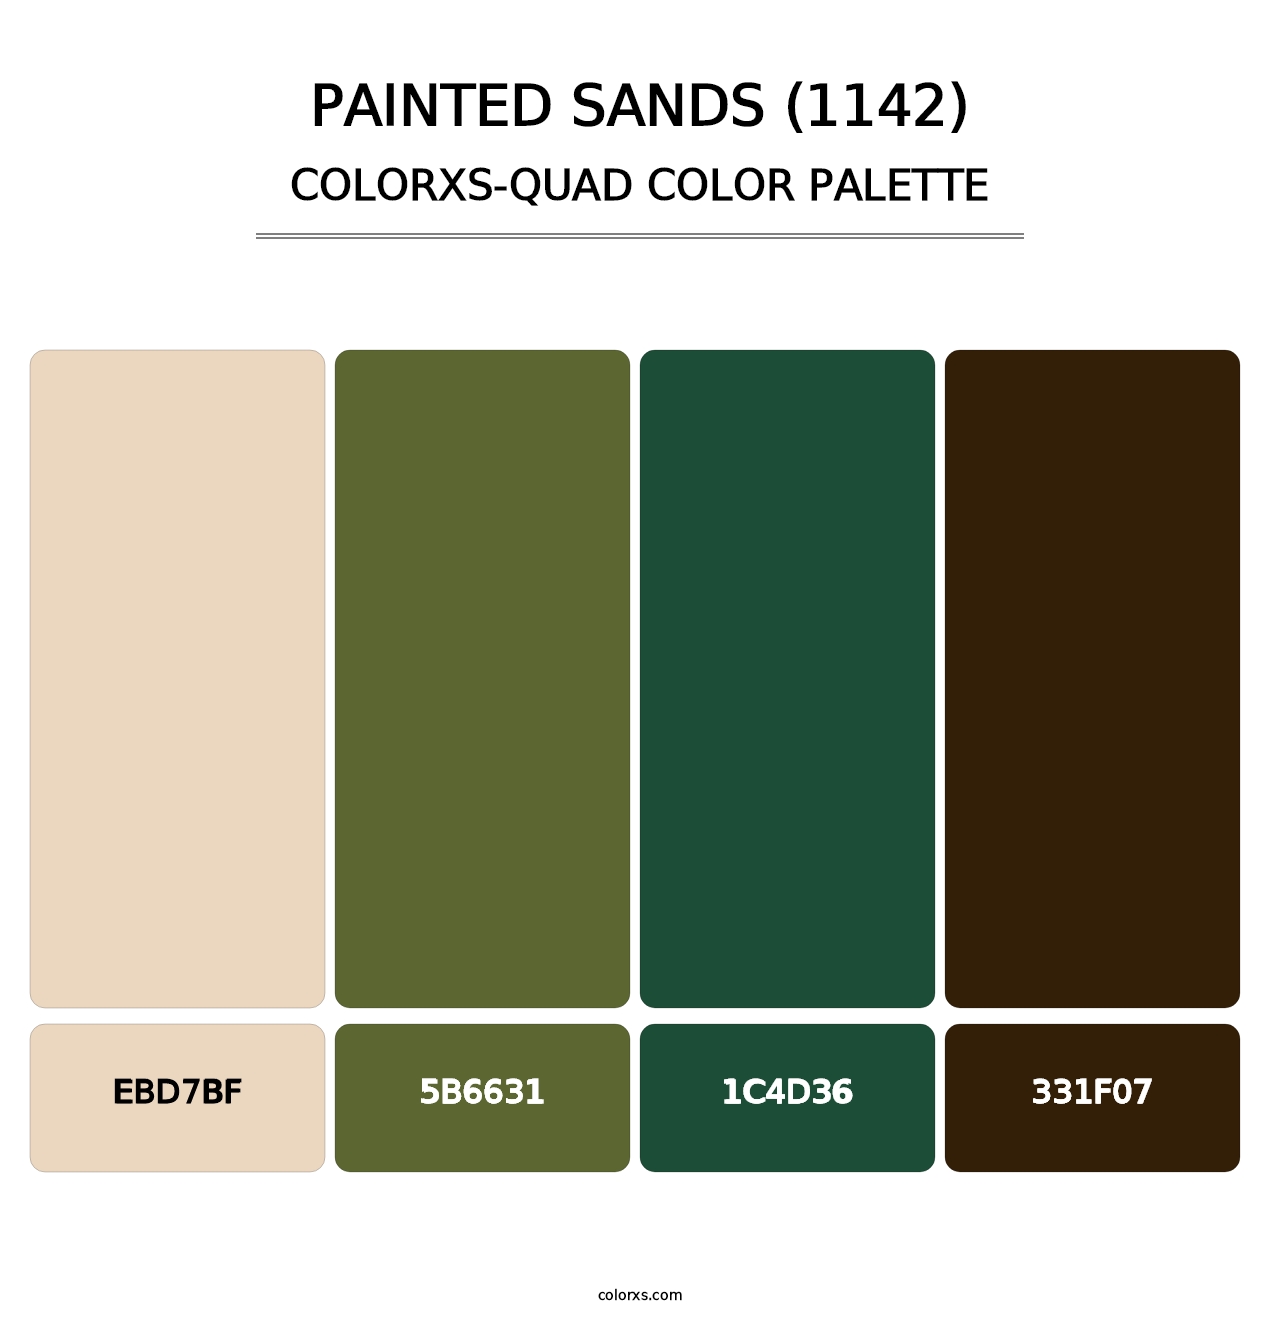 Painted Sands (1142) - Colorxs Quad Palette